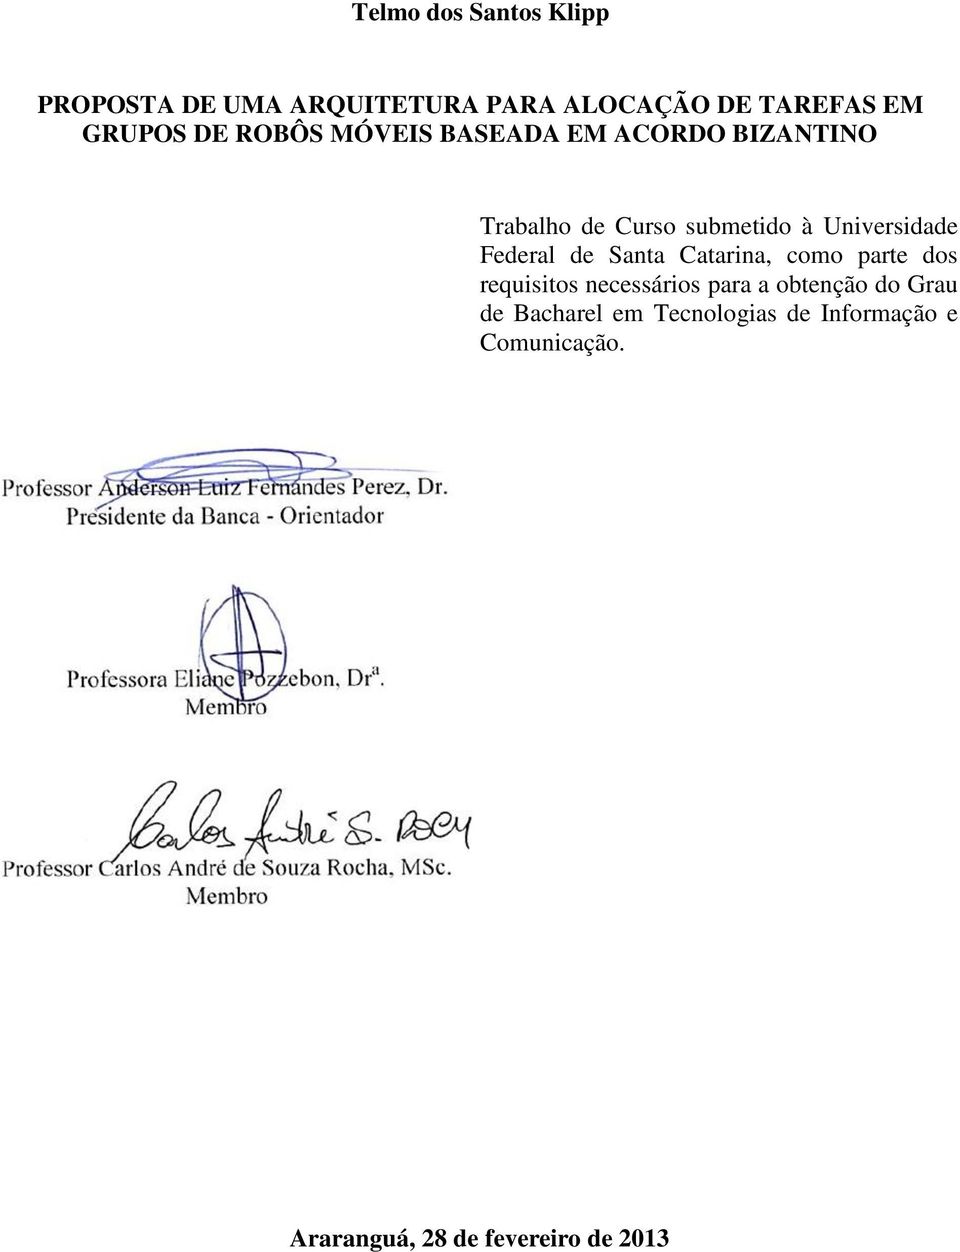 Federal de Santa Catarina, como parte dos requisitos necessários para a obtenção do